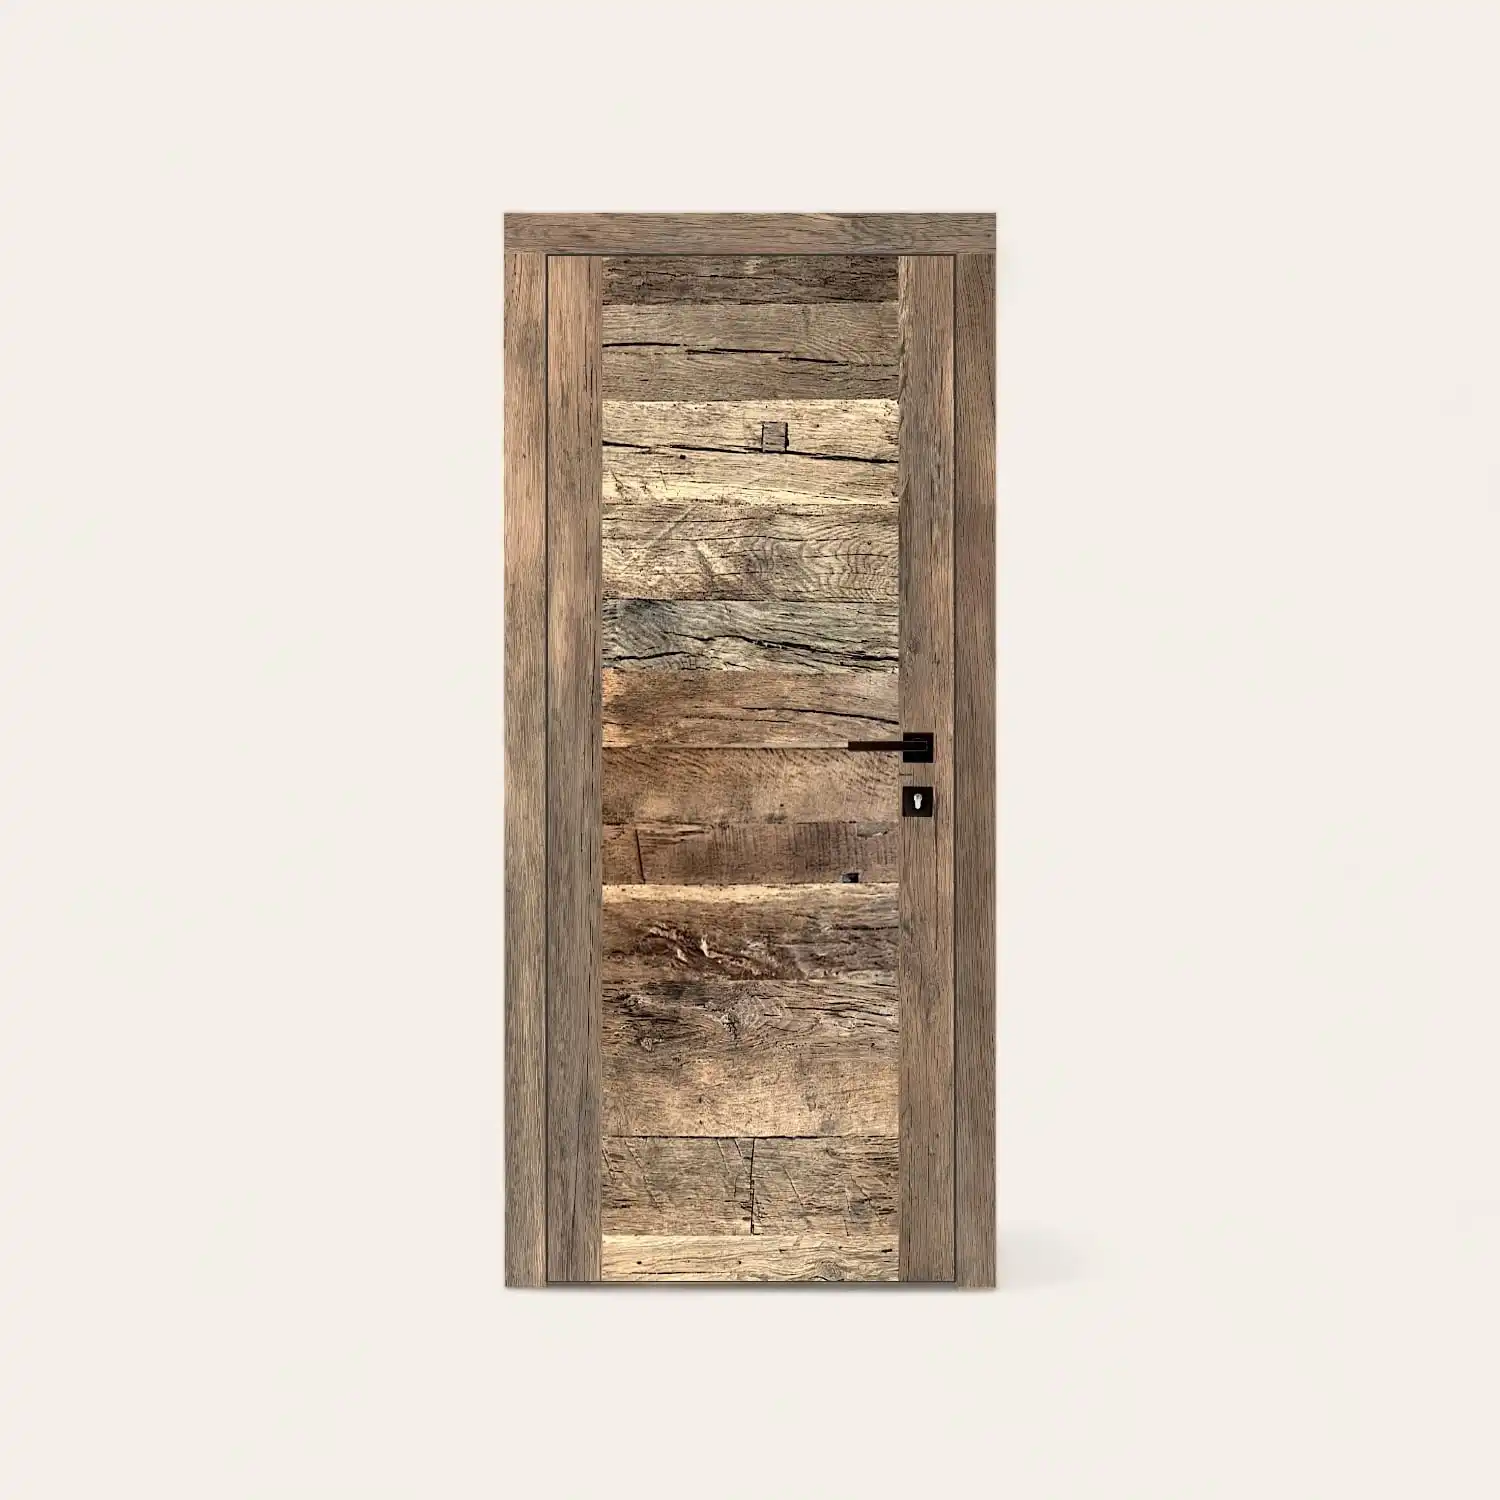  Une porte de grange en bois rustique vieux chêne sur fond blanc. 